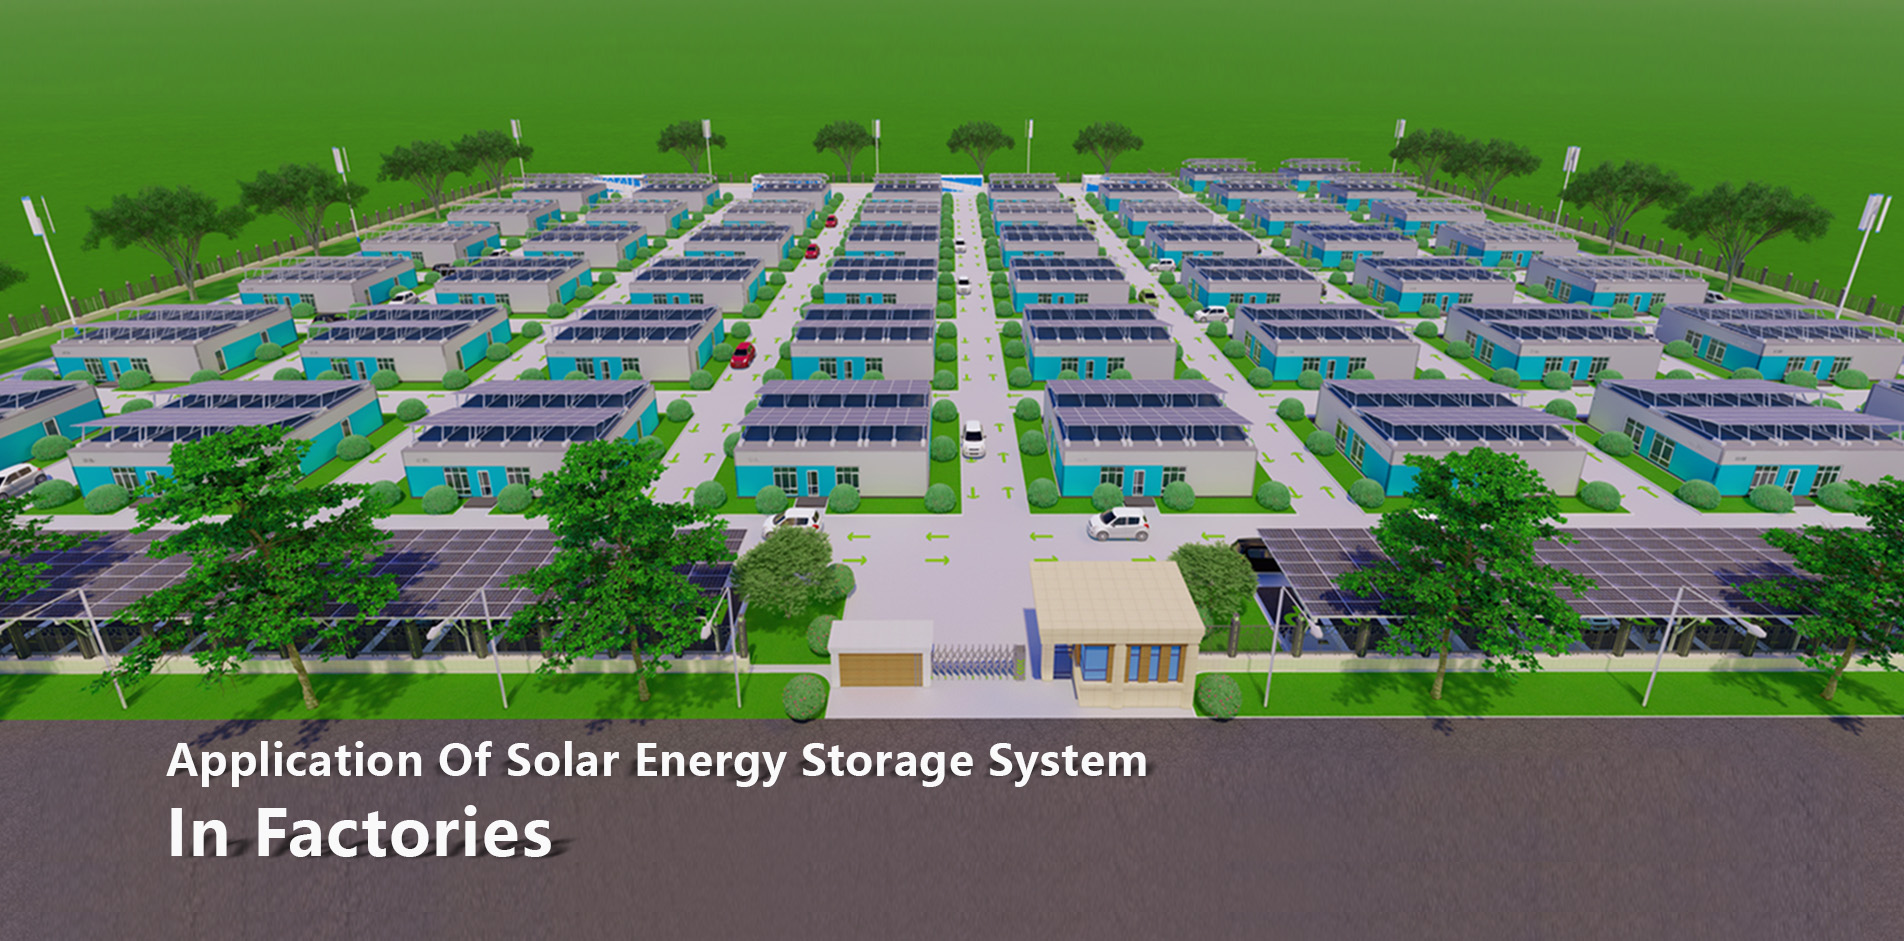 نظام تخزين الطاقة الشمسية في مناطق التعدين